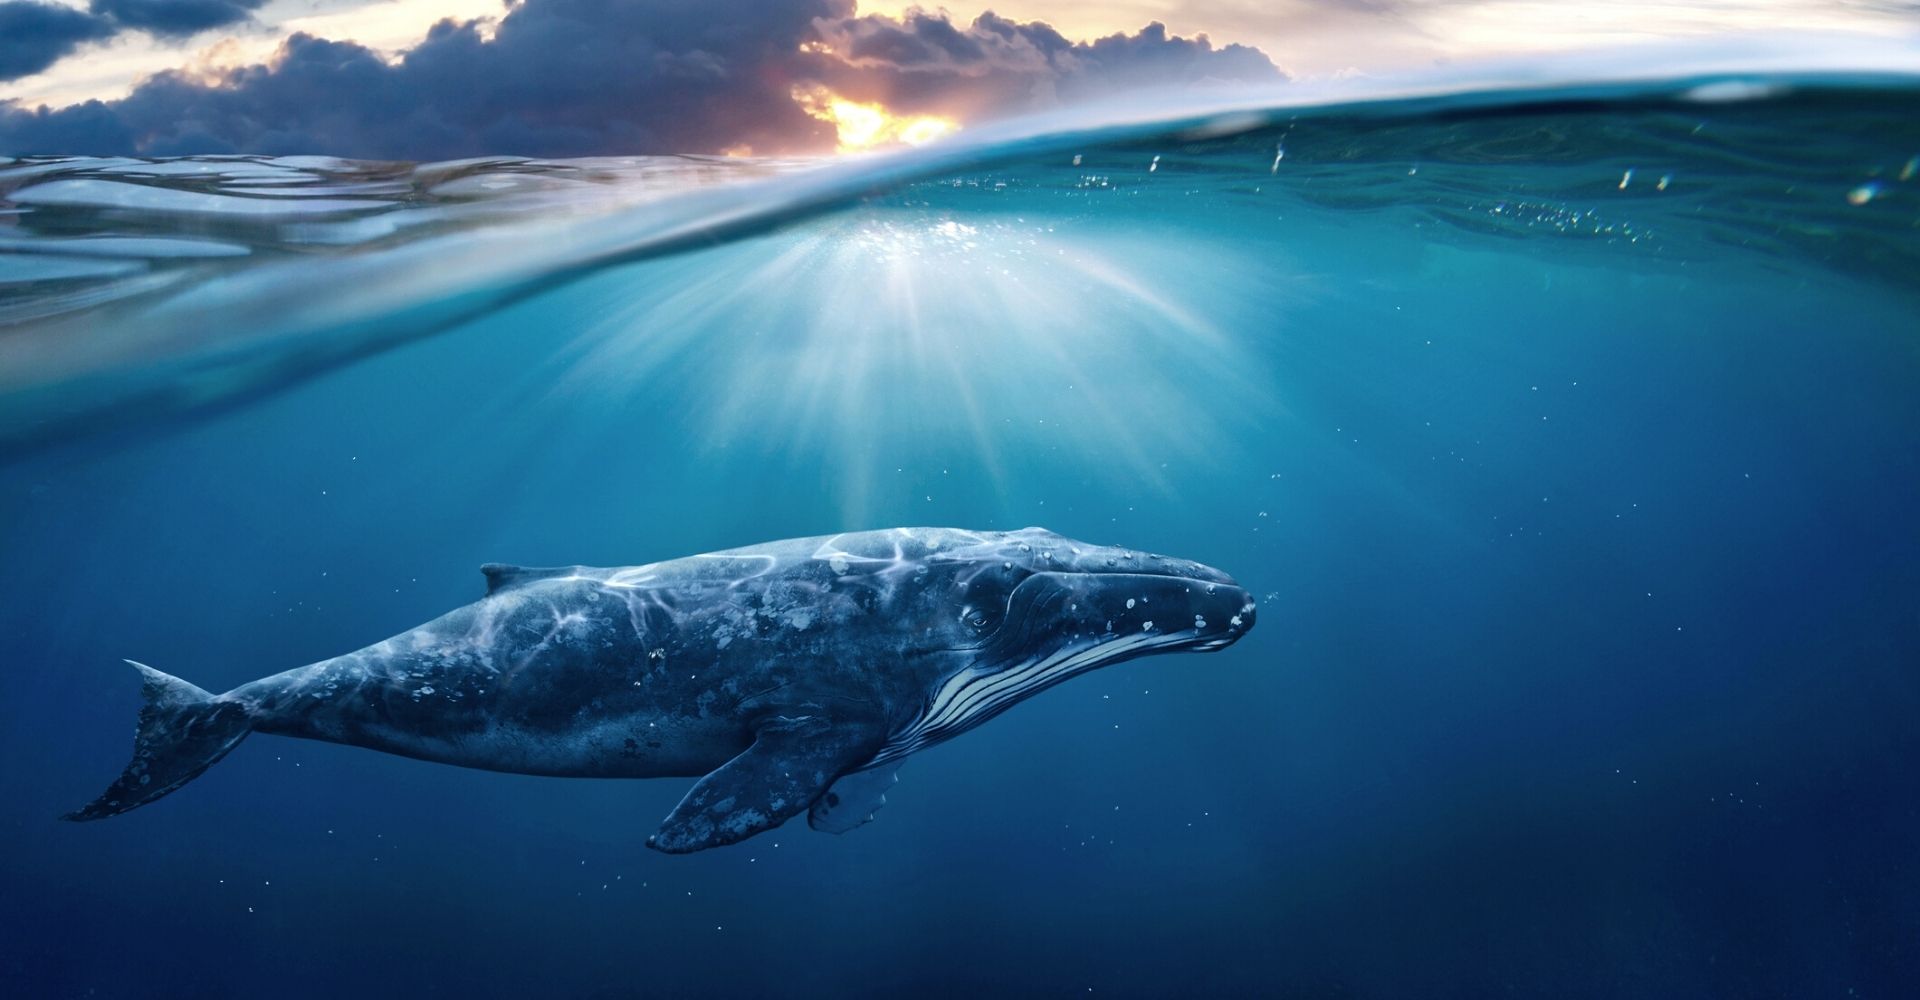 "La balena alla fine del mondo" di John Ironmonger: finché c’è Natura, c’è speranza